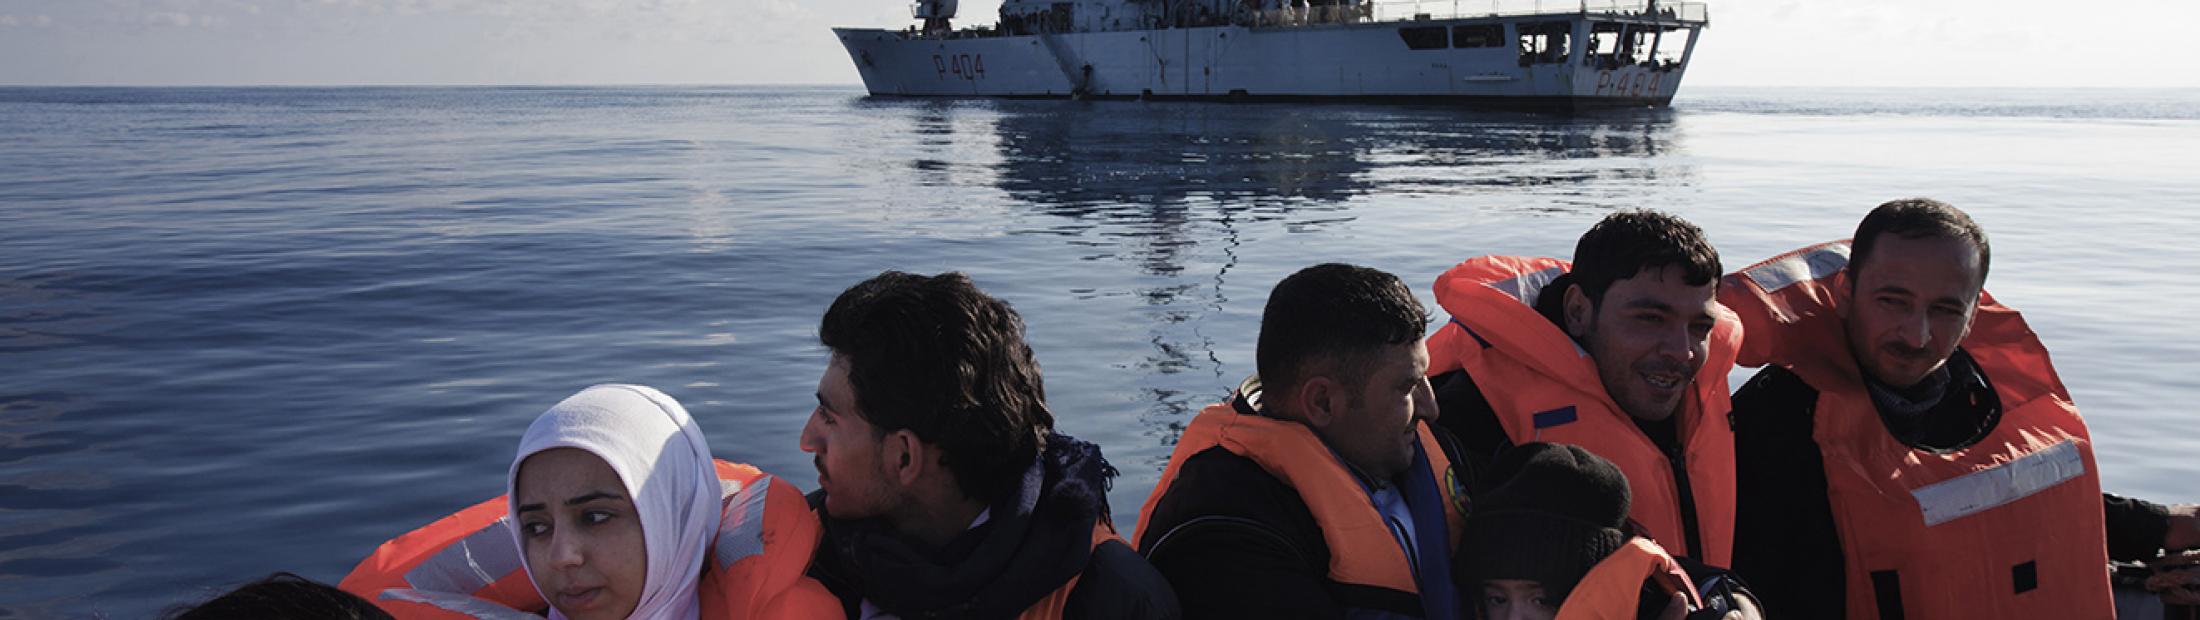 Una media de más de 2.000 personas cruzan el Mediterráneo cada día